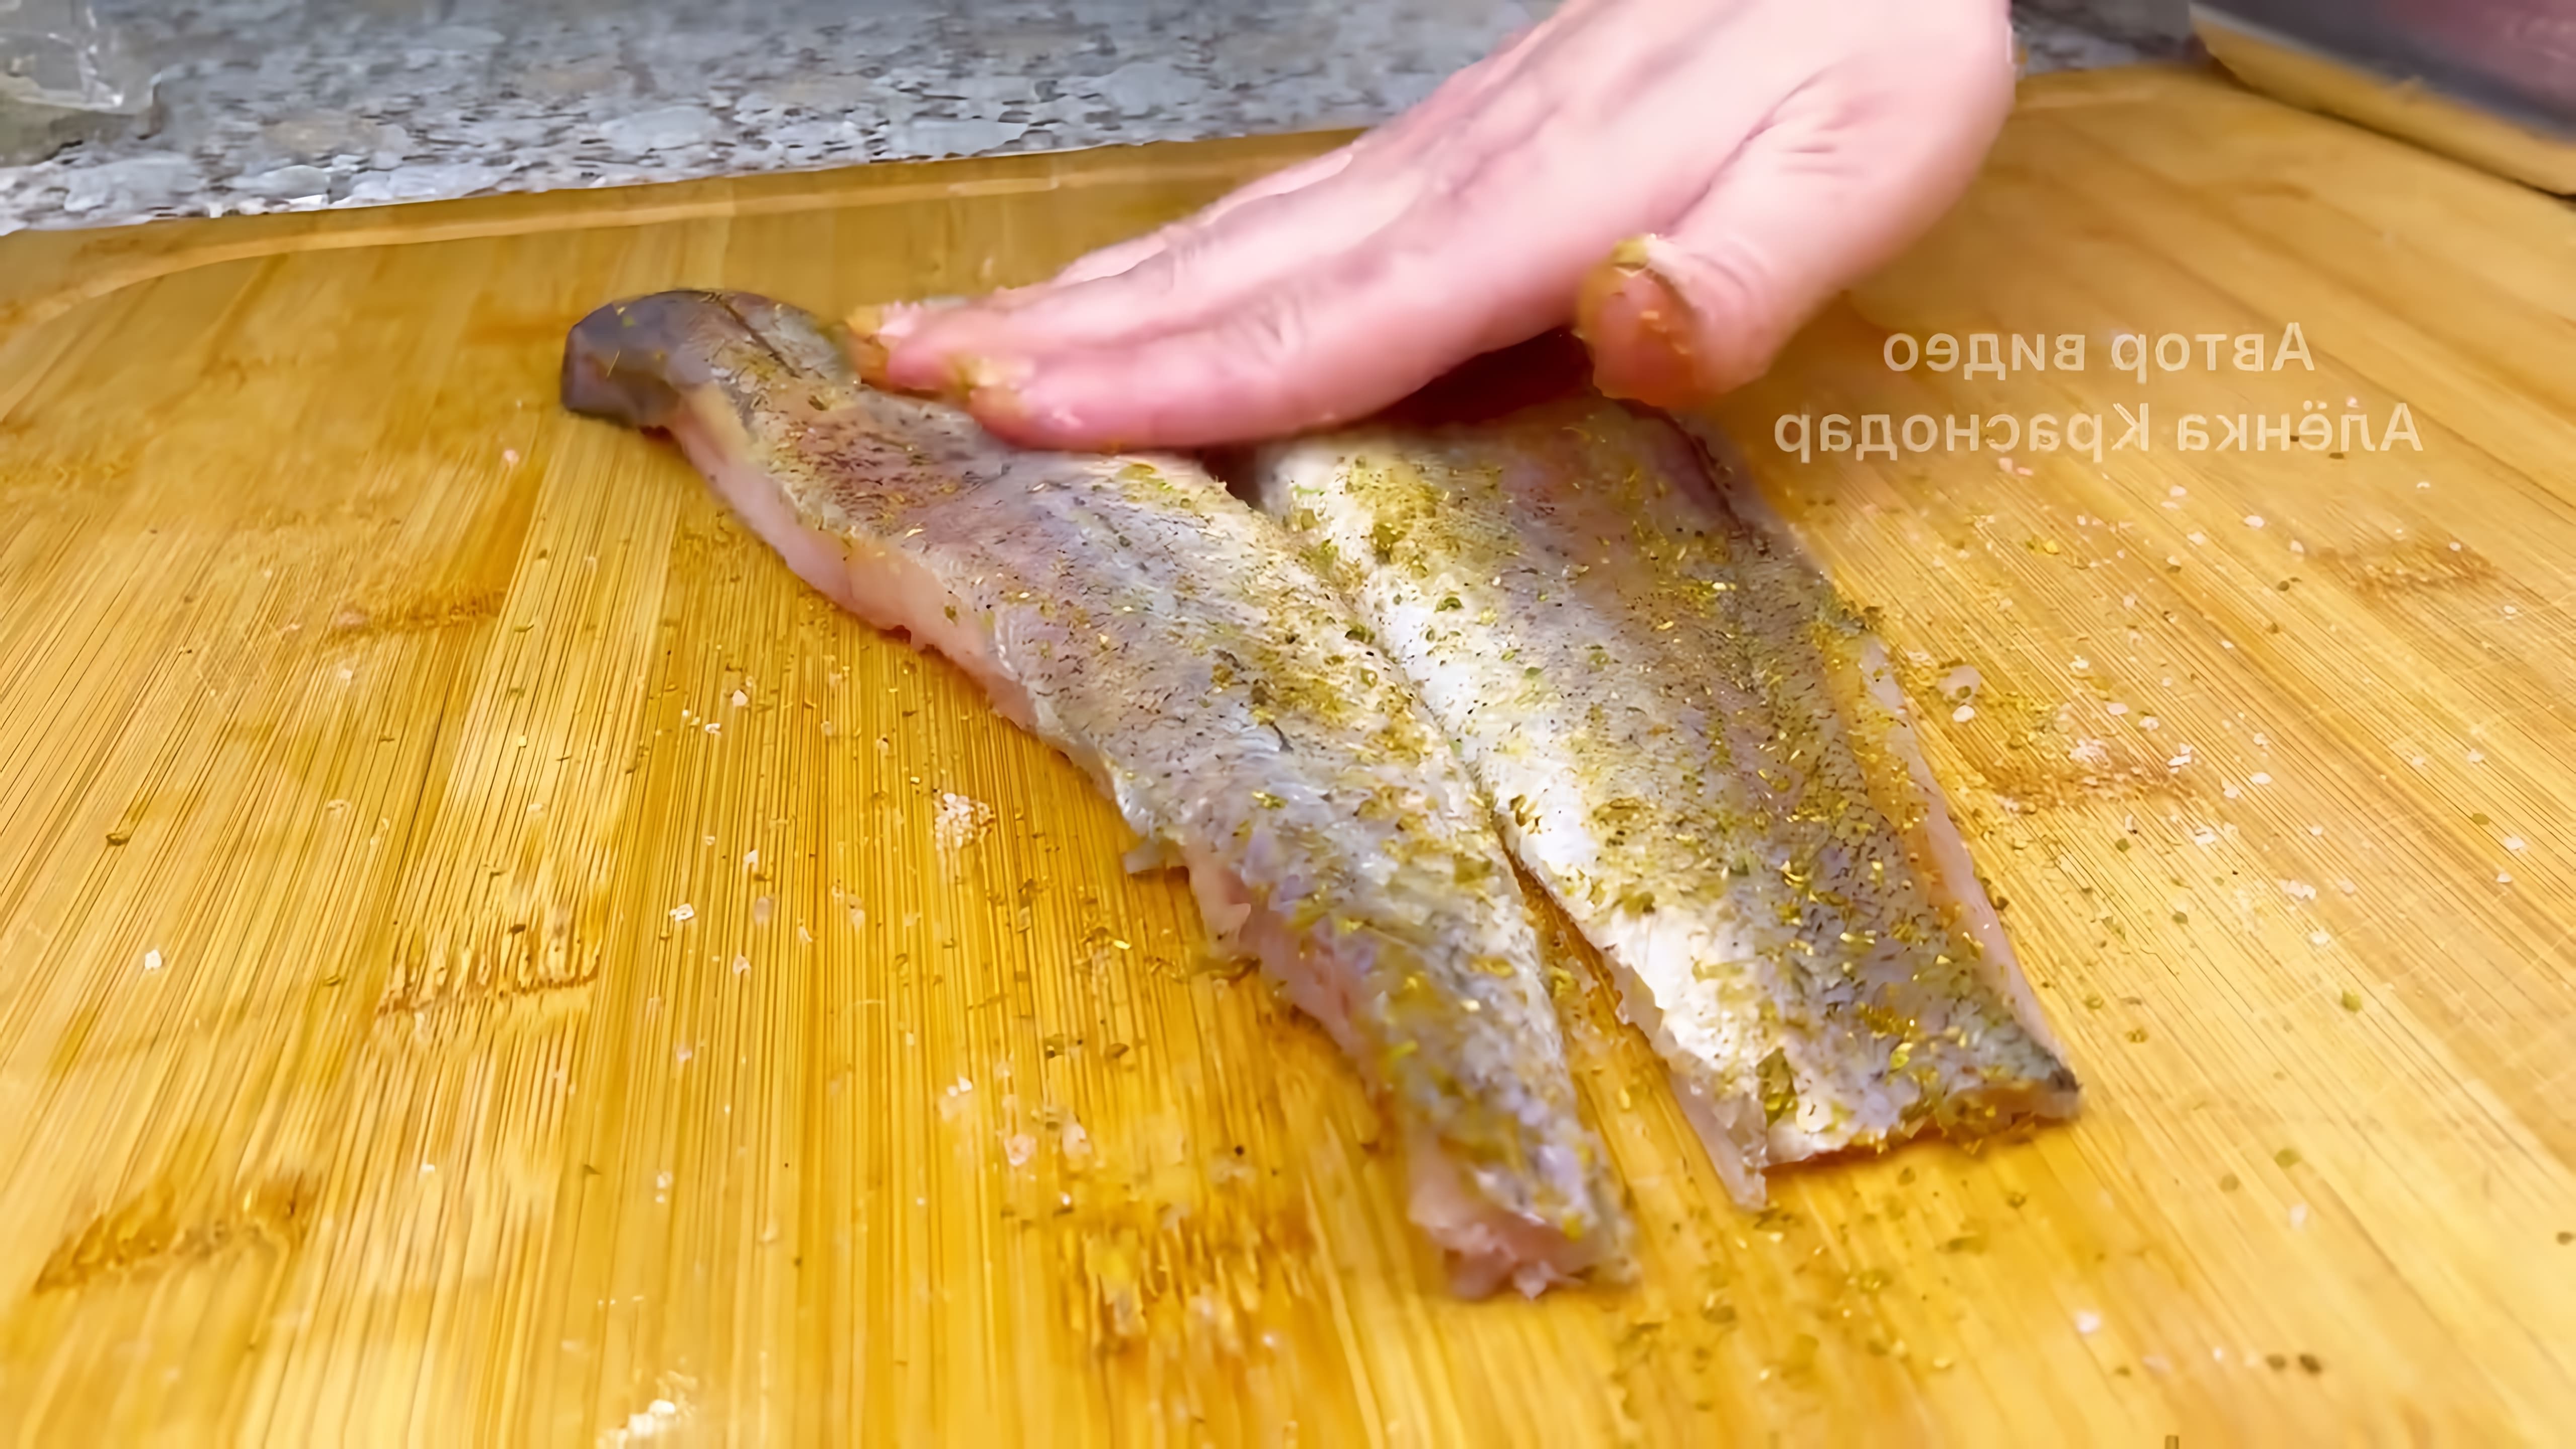 В этом видео демонстрируется рецепт приготовления сочного и ароматного минтая в духовке